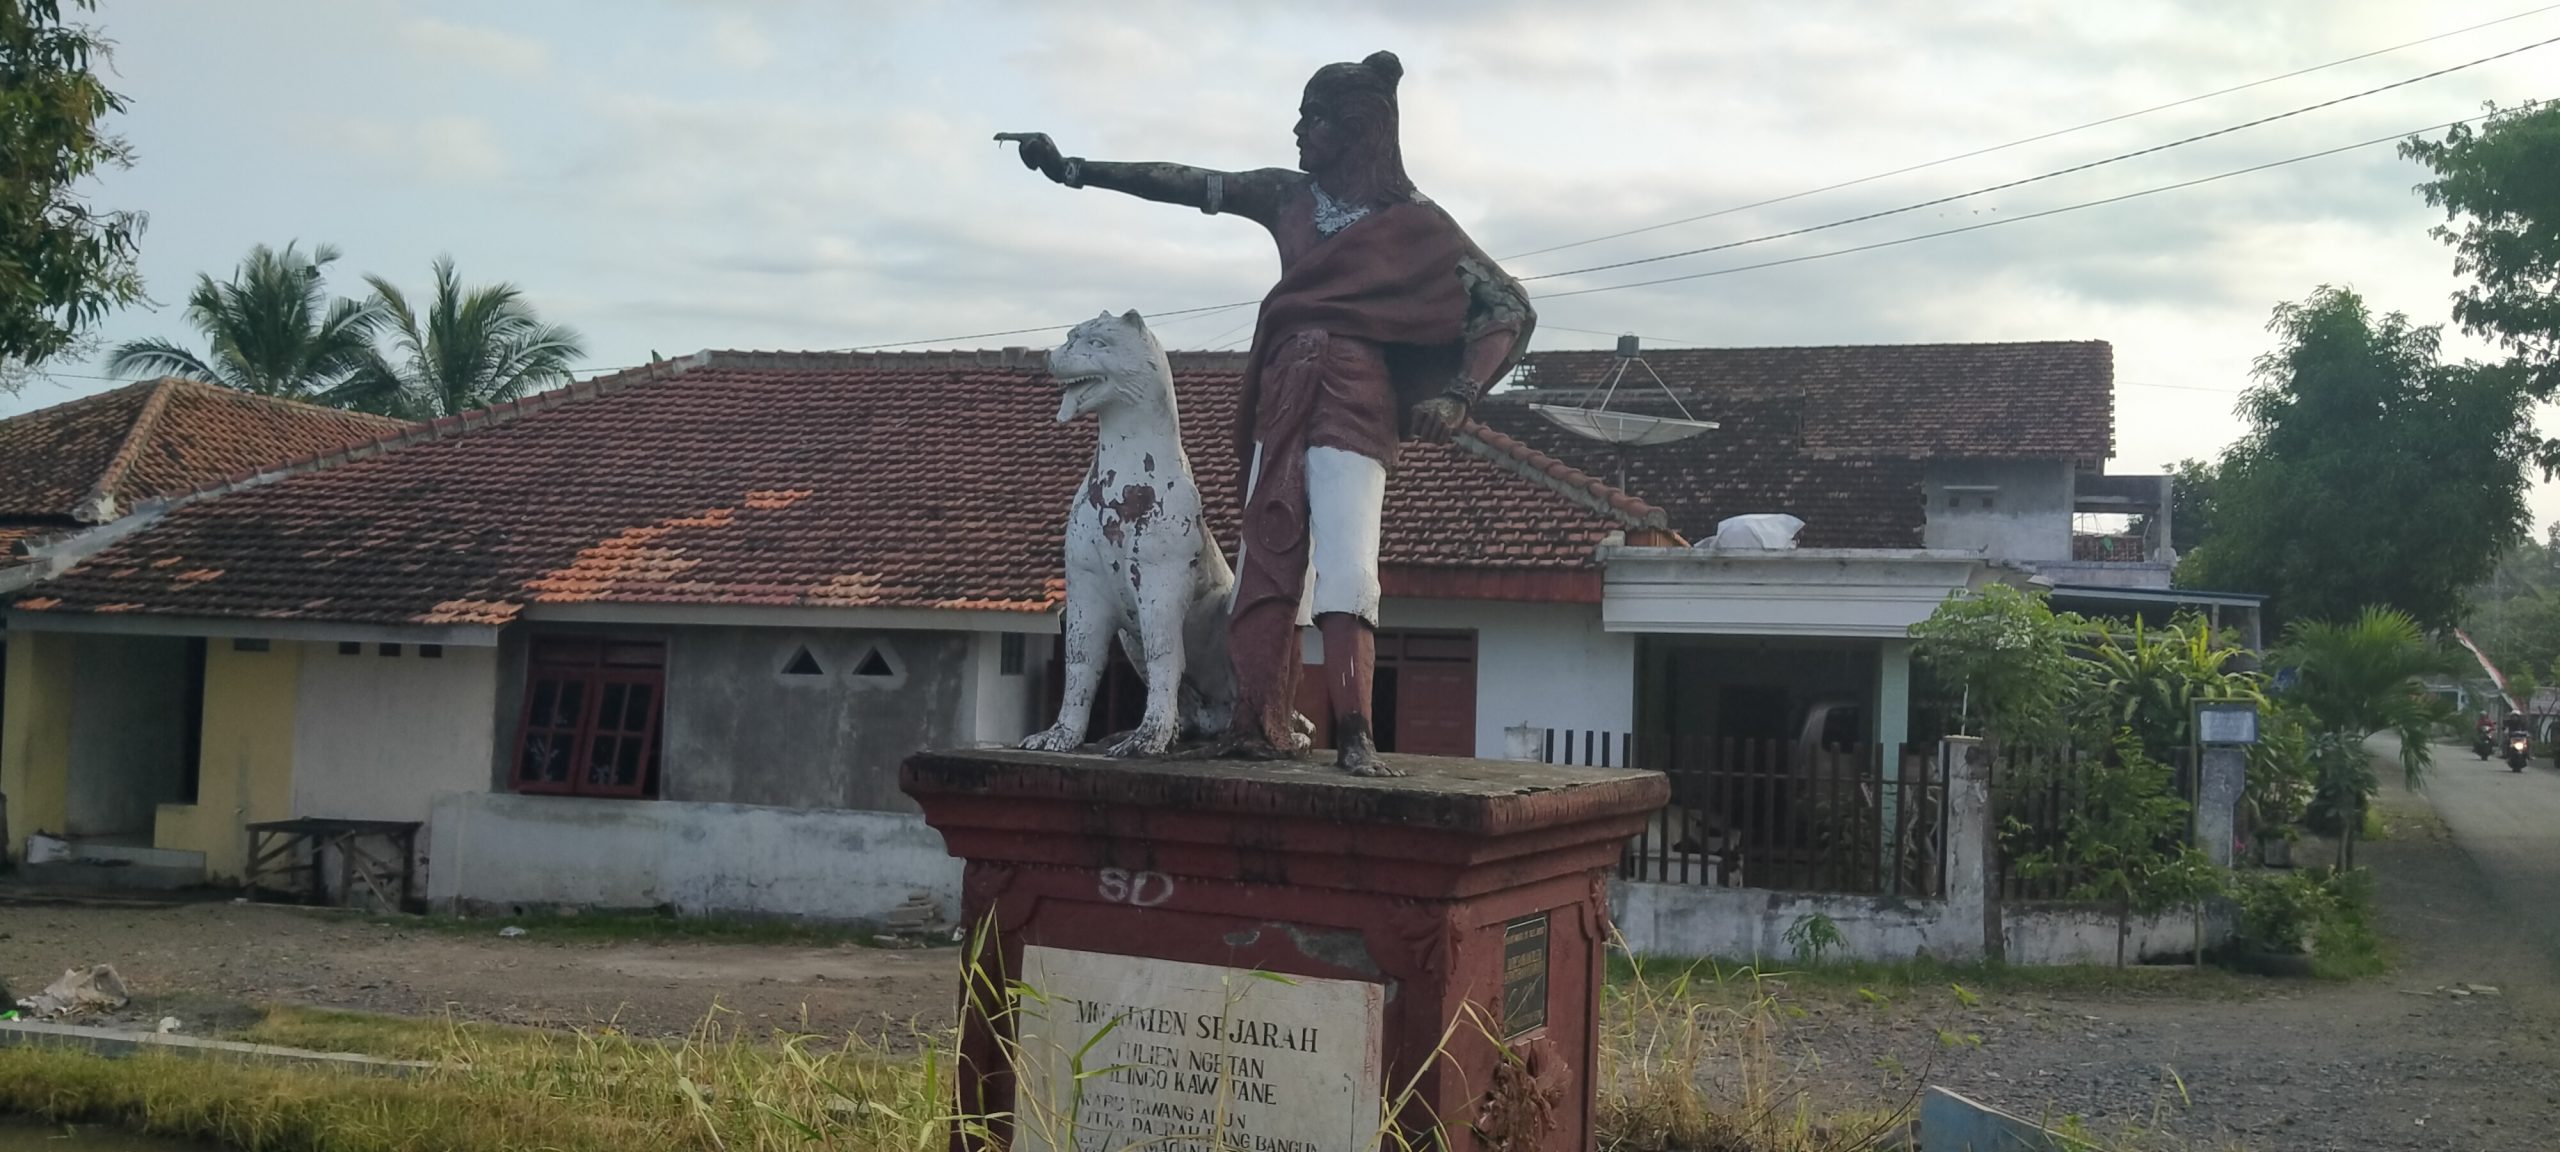 Patung Prabu Tawangalun Bersama Macan Putih di Desa Macan Putih, Yang Dulu Pernah Menjadi Kerajaan Blambangan. ( Foto: Hermawan Banyuwangi Hits)